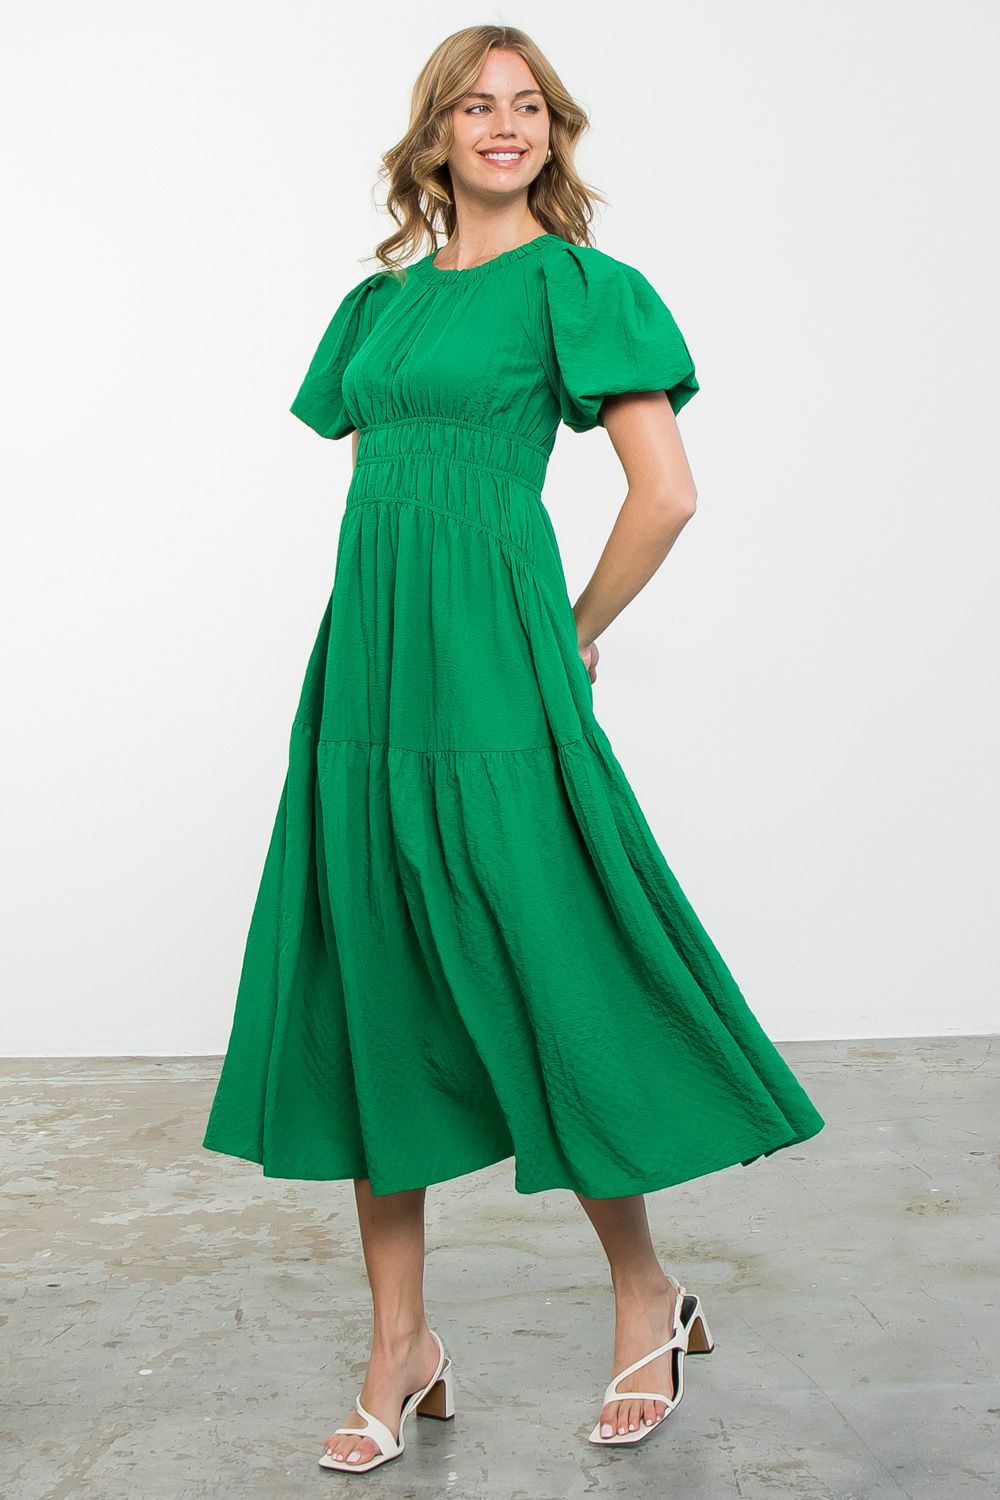 Green Goddess Maxi Dress